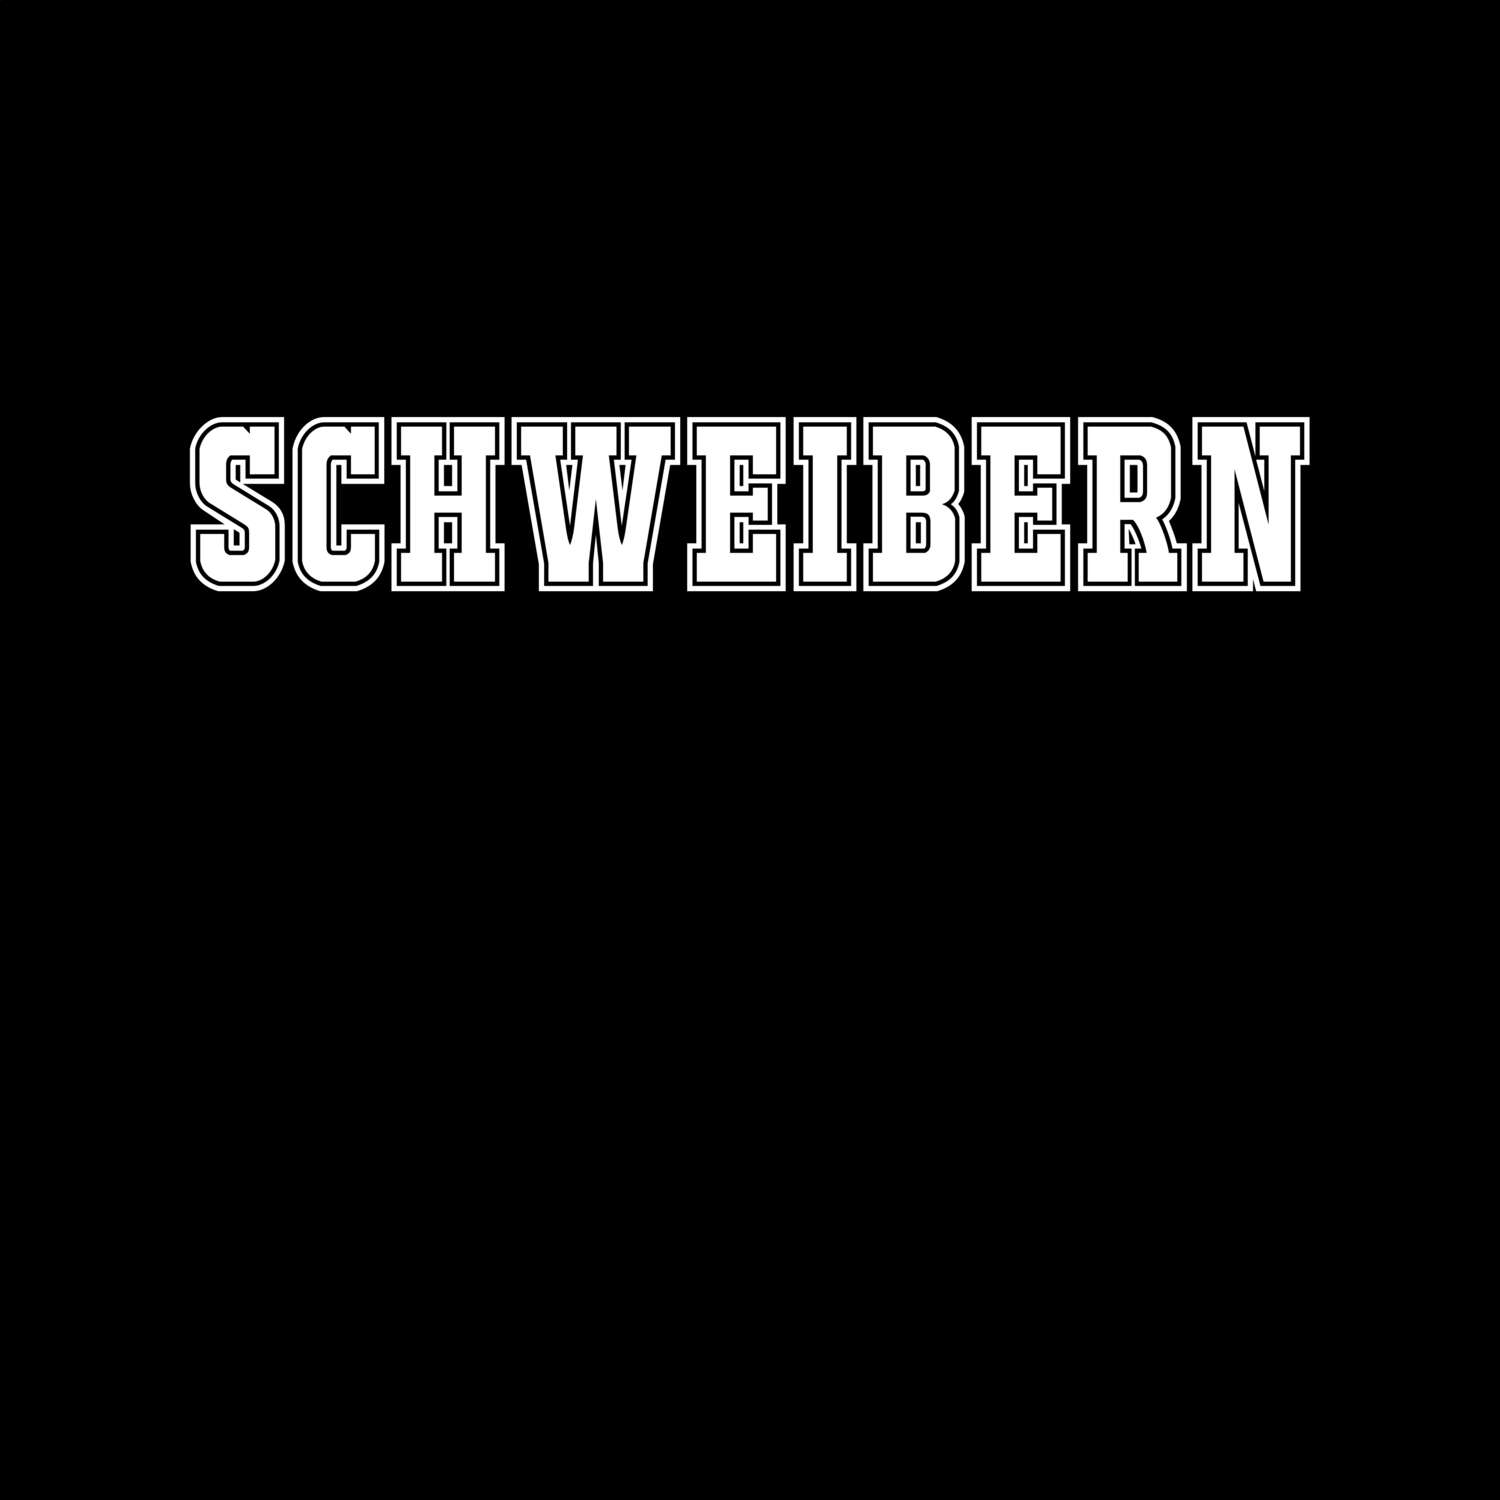 Schweibern T-Shirt »Classic«